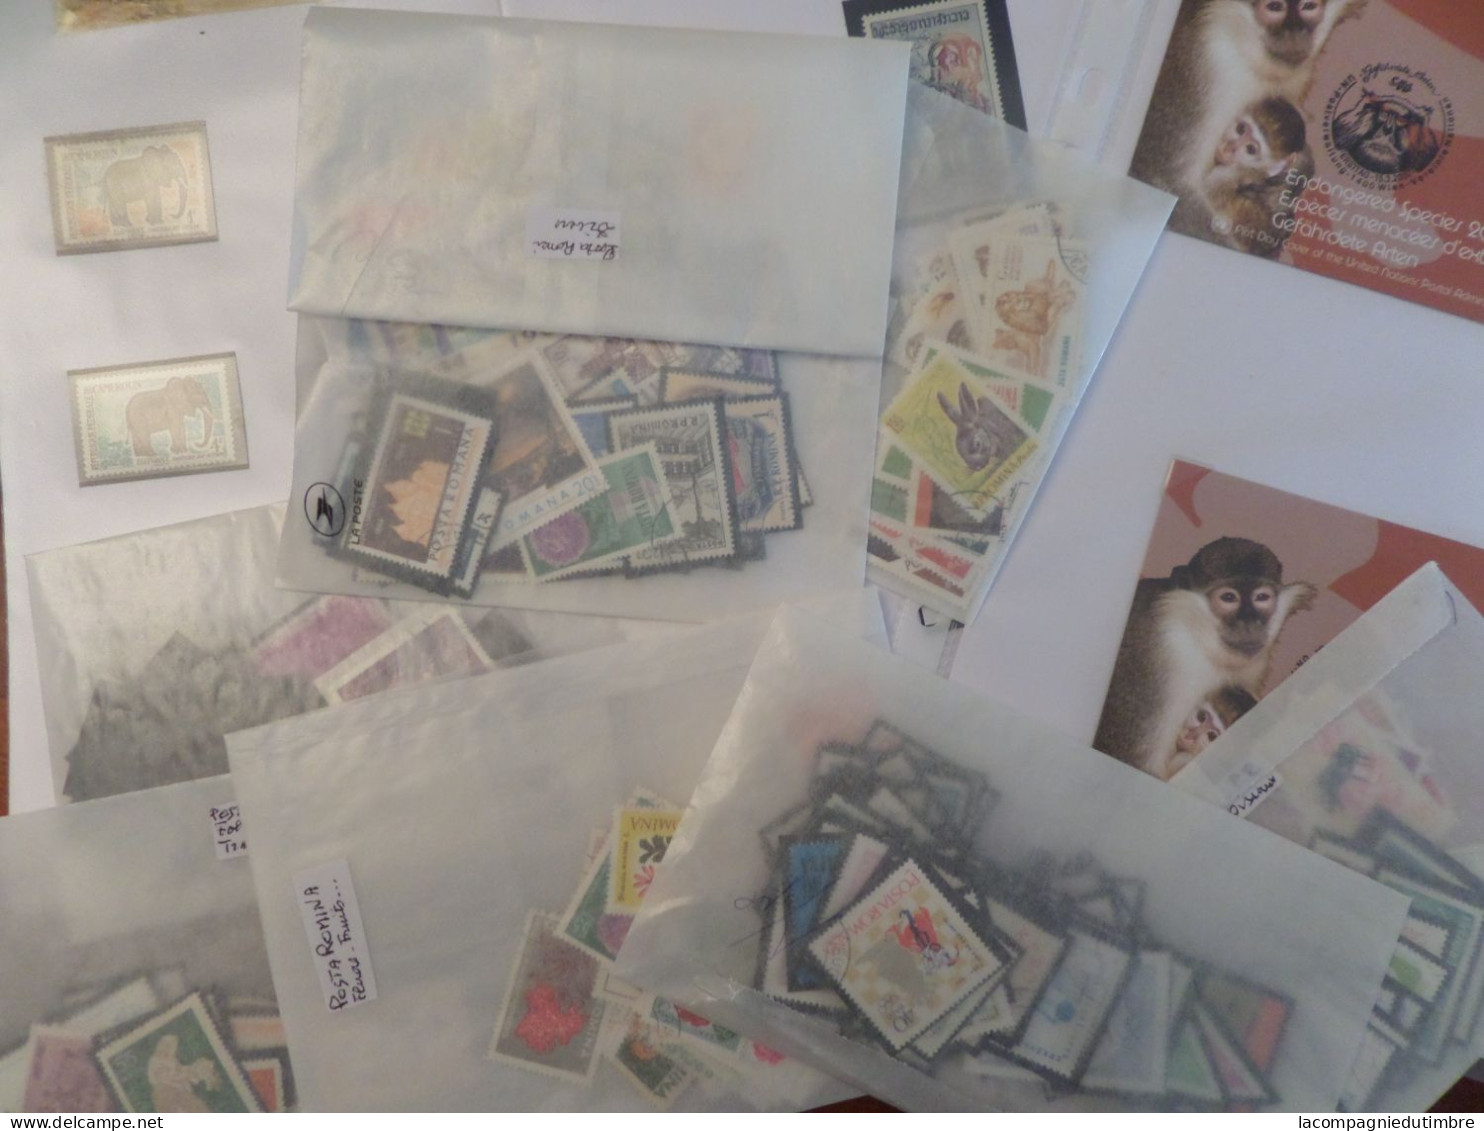 Superbe vrac de milliers de timbres tous pays et toutes périodes neufs/oblitérés. COTE ENORME!!!! A SAISIR!!!!